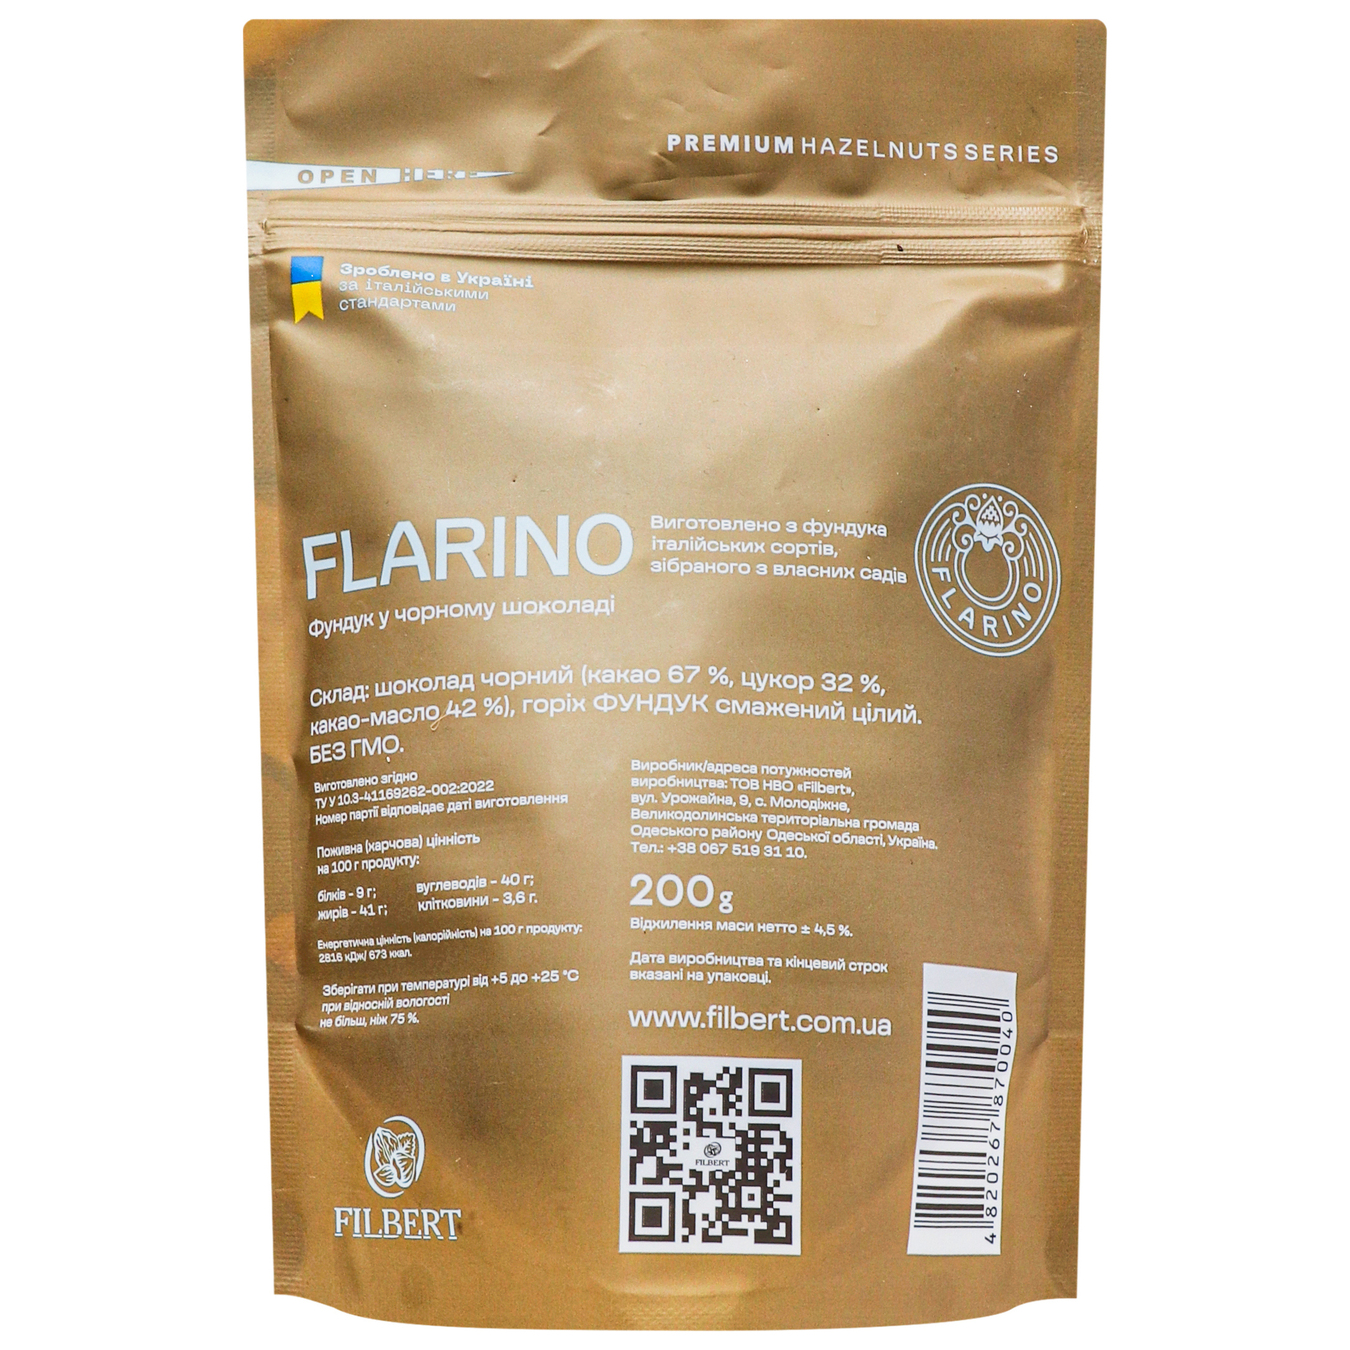 Flarino hazelnuts in dark chocolate 200g 2